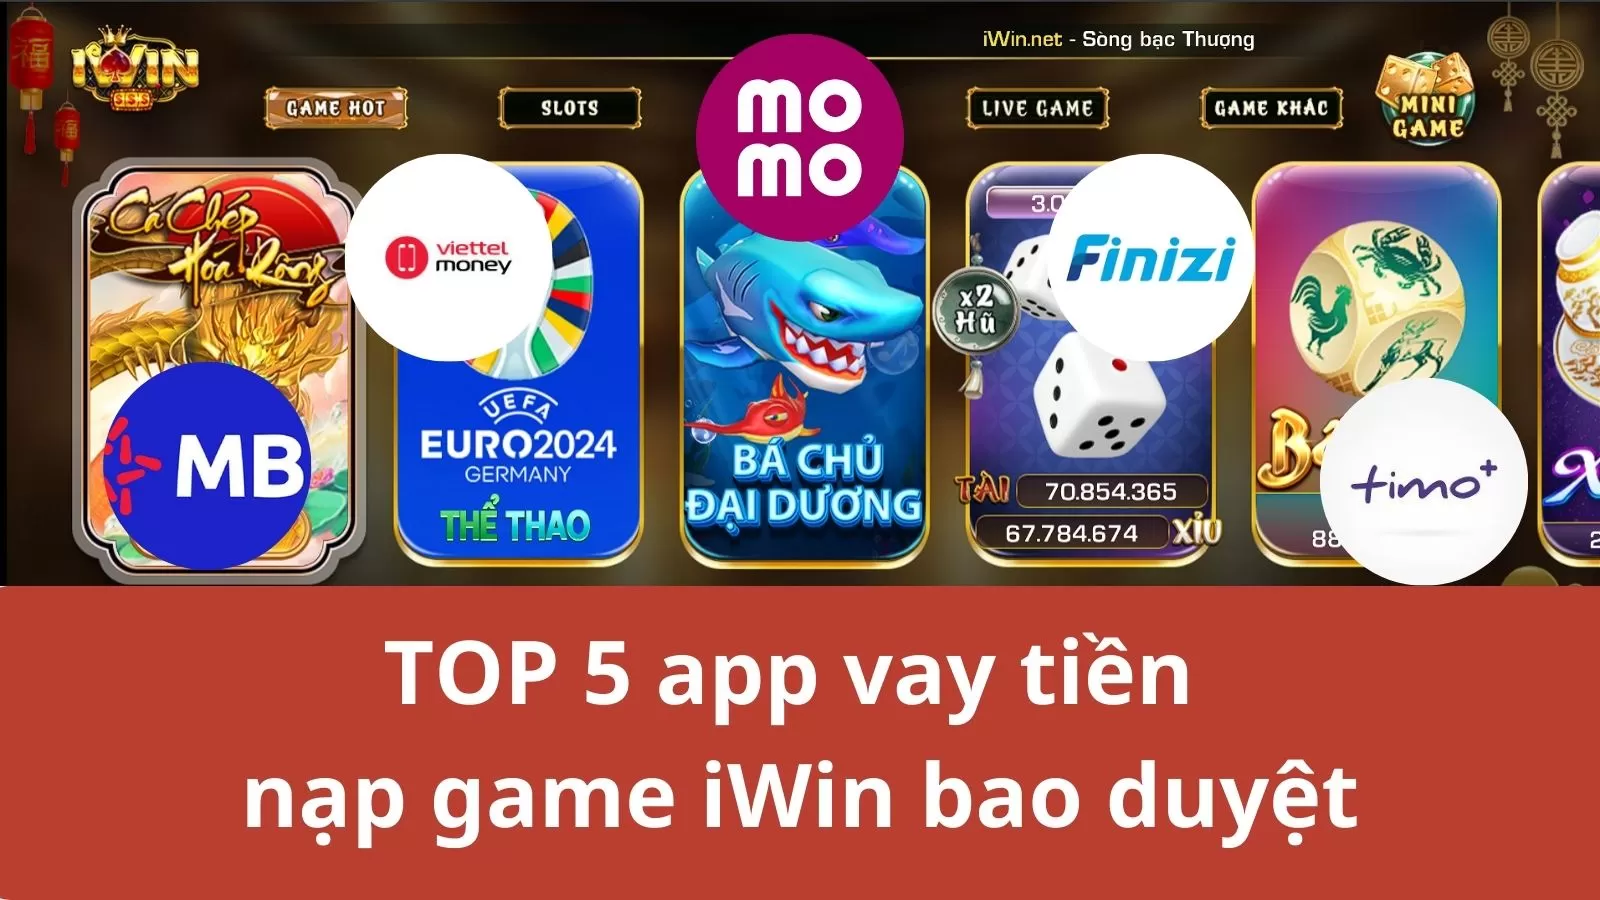 TOP 5 app vay tiền để nạp game iWin bao nợ xấu duyệt 100%